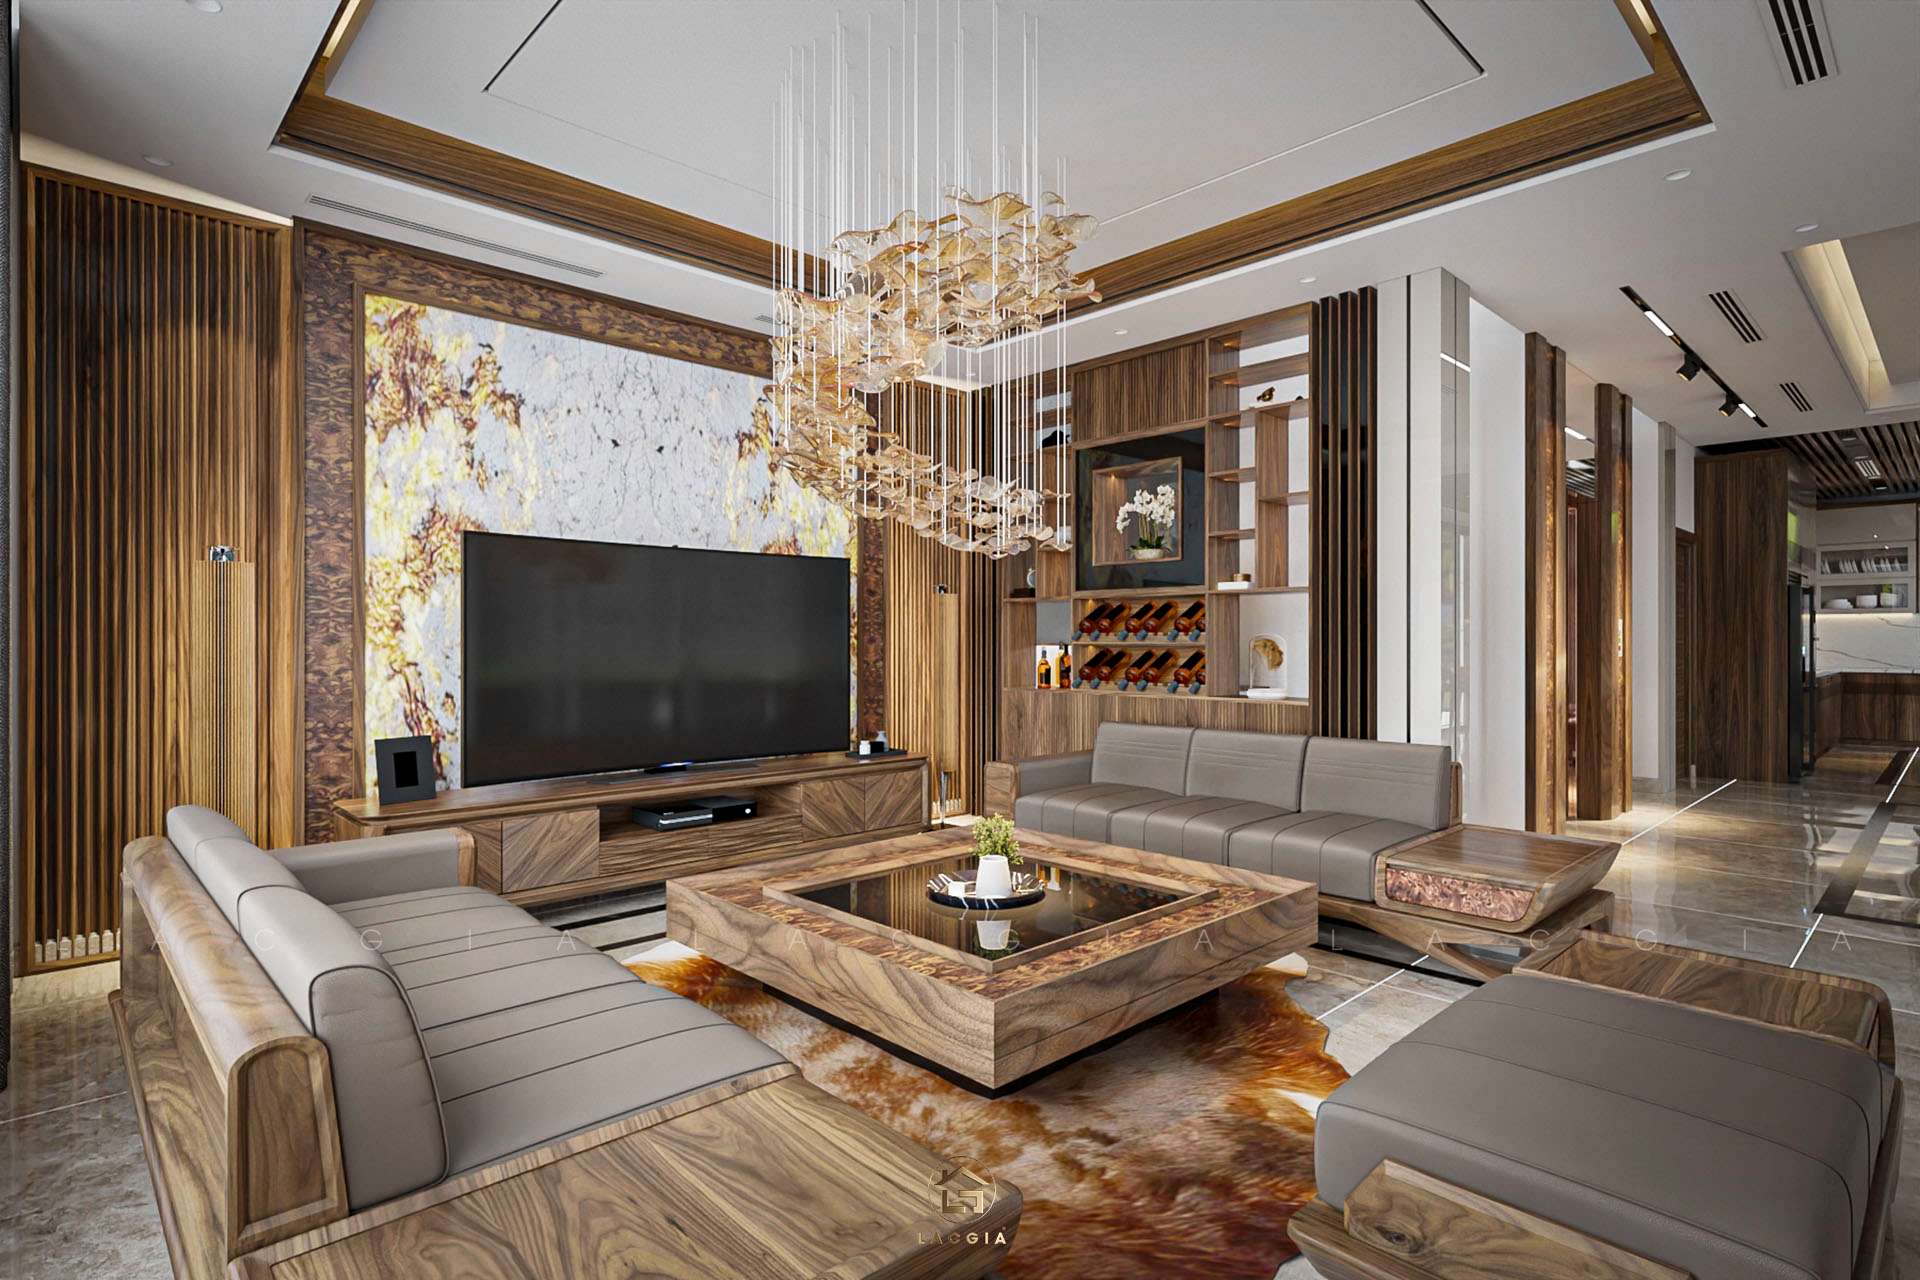 20 ý tưởng thiết kế nội thất phòng khách biệt thự sáng tạo 2020 - Biệt thự  triệu đô - Nhận mua bán, chuyển nhượng biệt thự - liền kề - shophouse